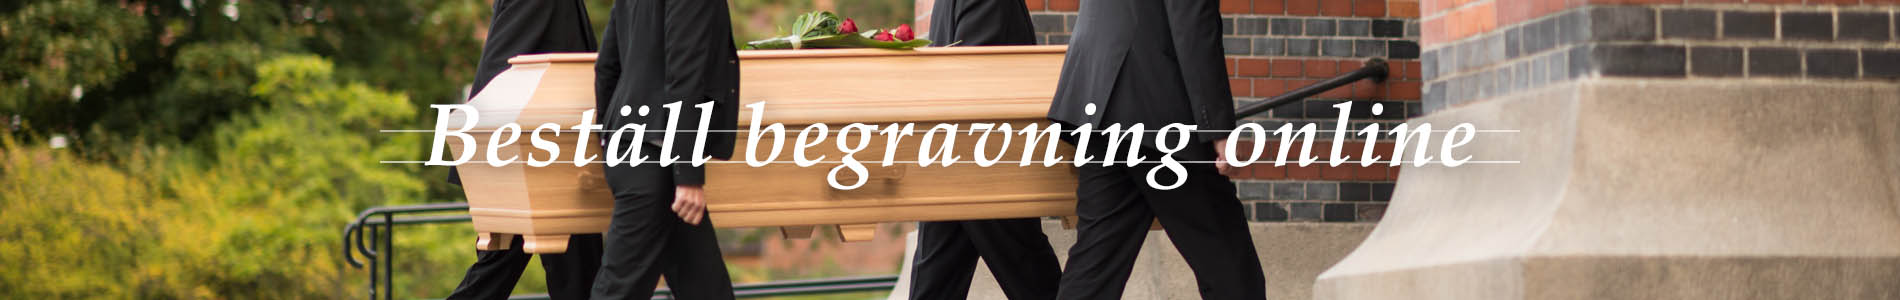 Axelssons Begravningsbyrå Burlöv: Beställ begravning online